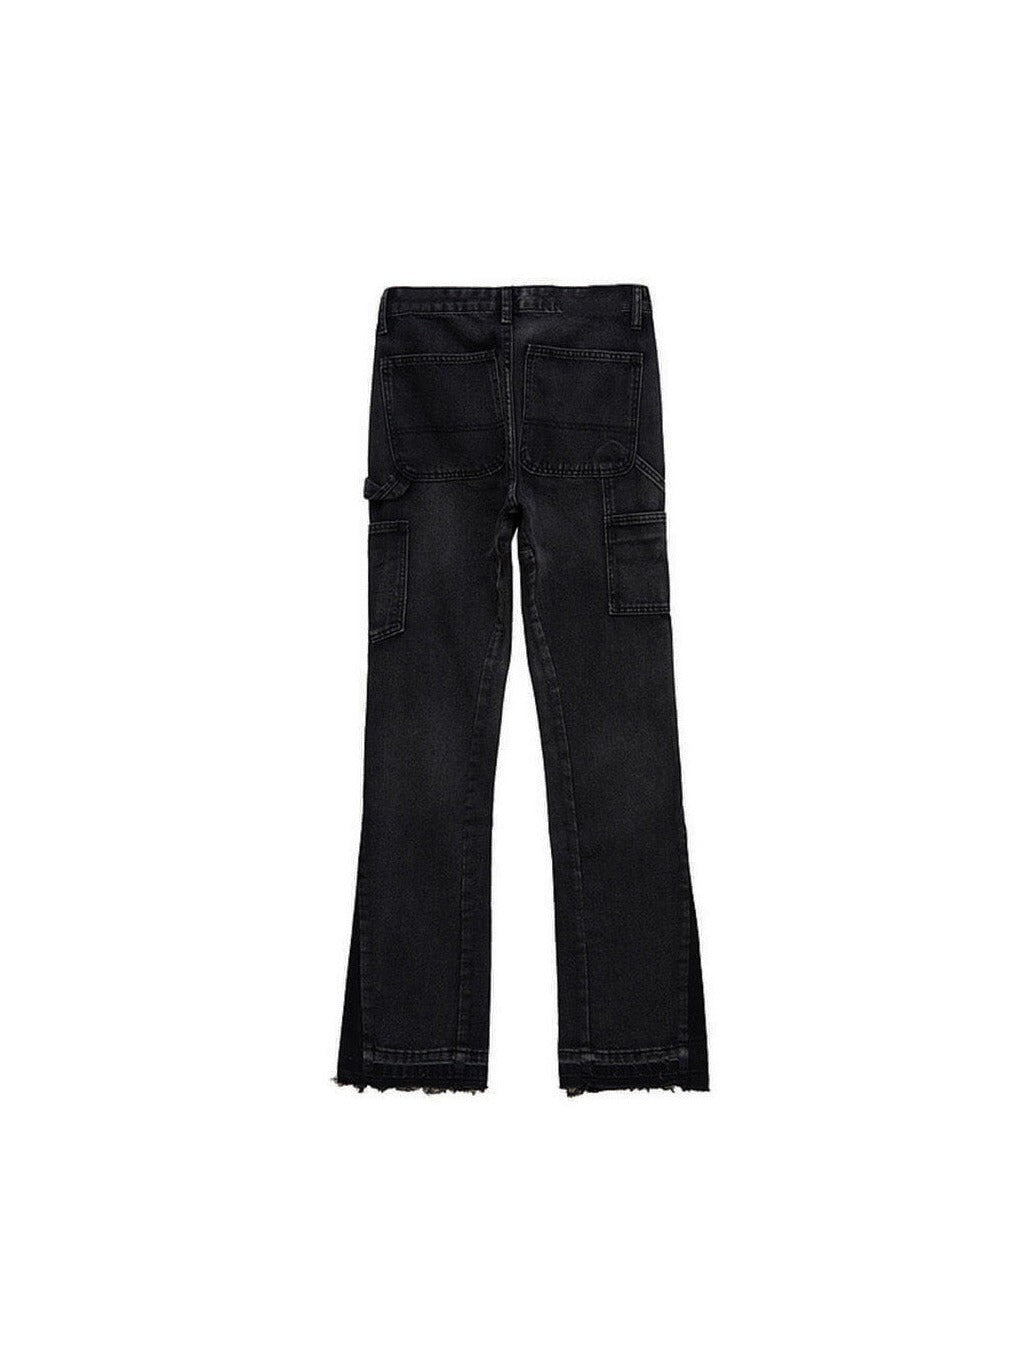 Sole et. Al Metro Flared Carpenter Denim Jeans : Black